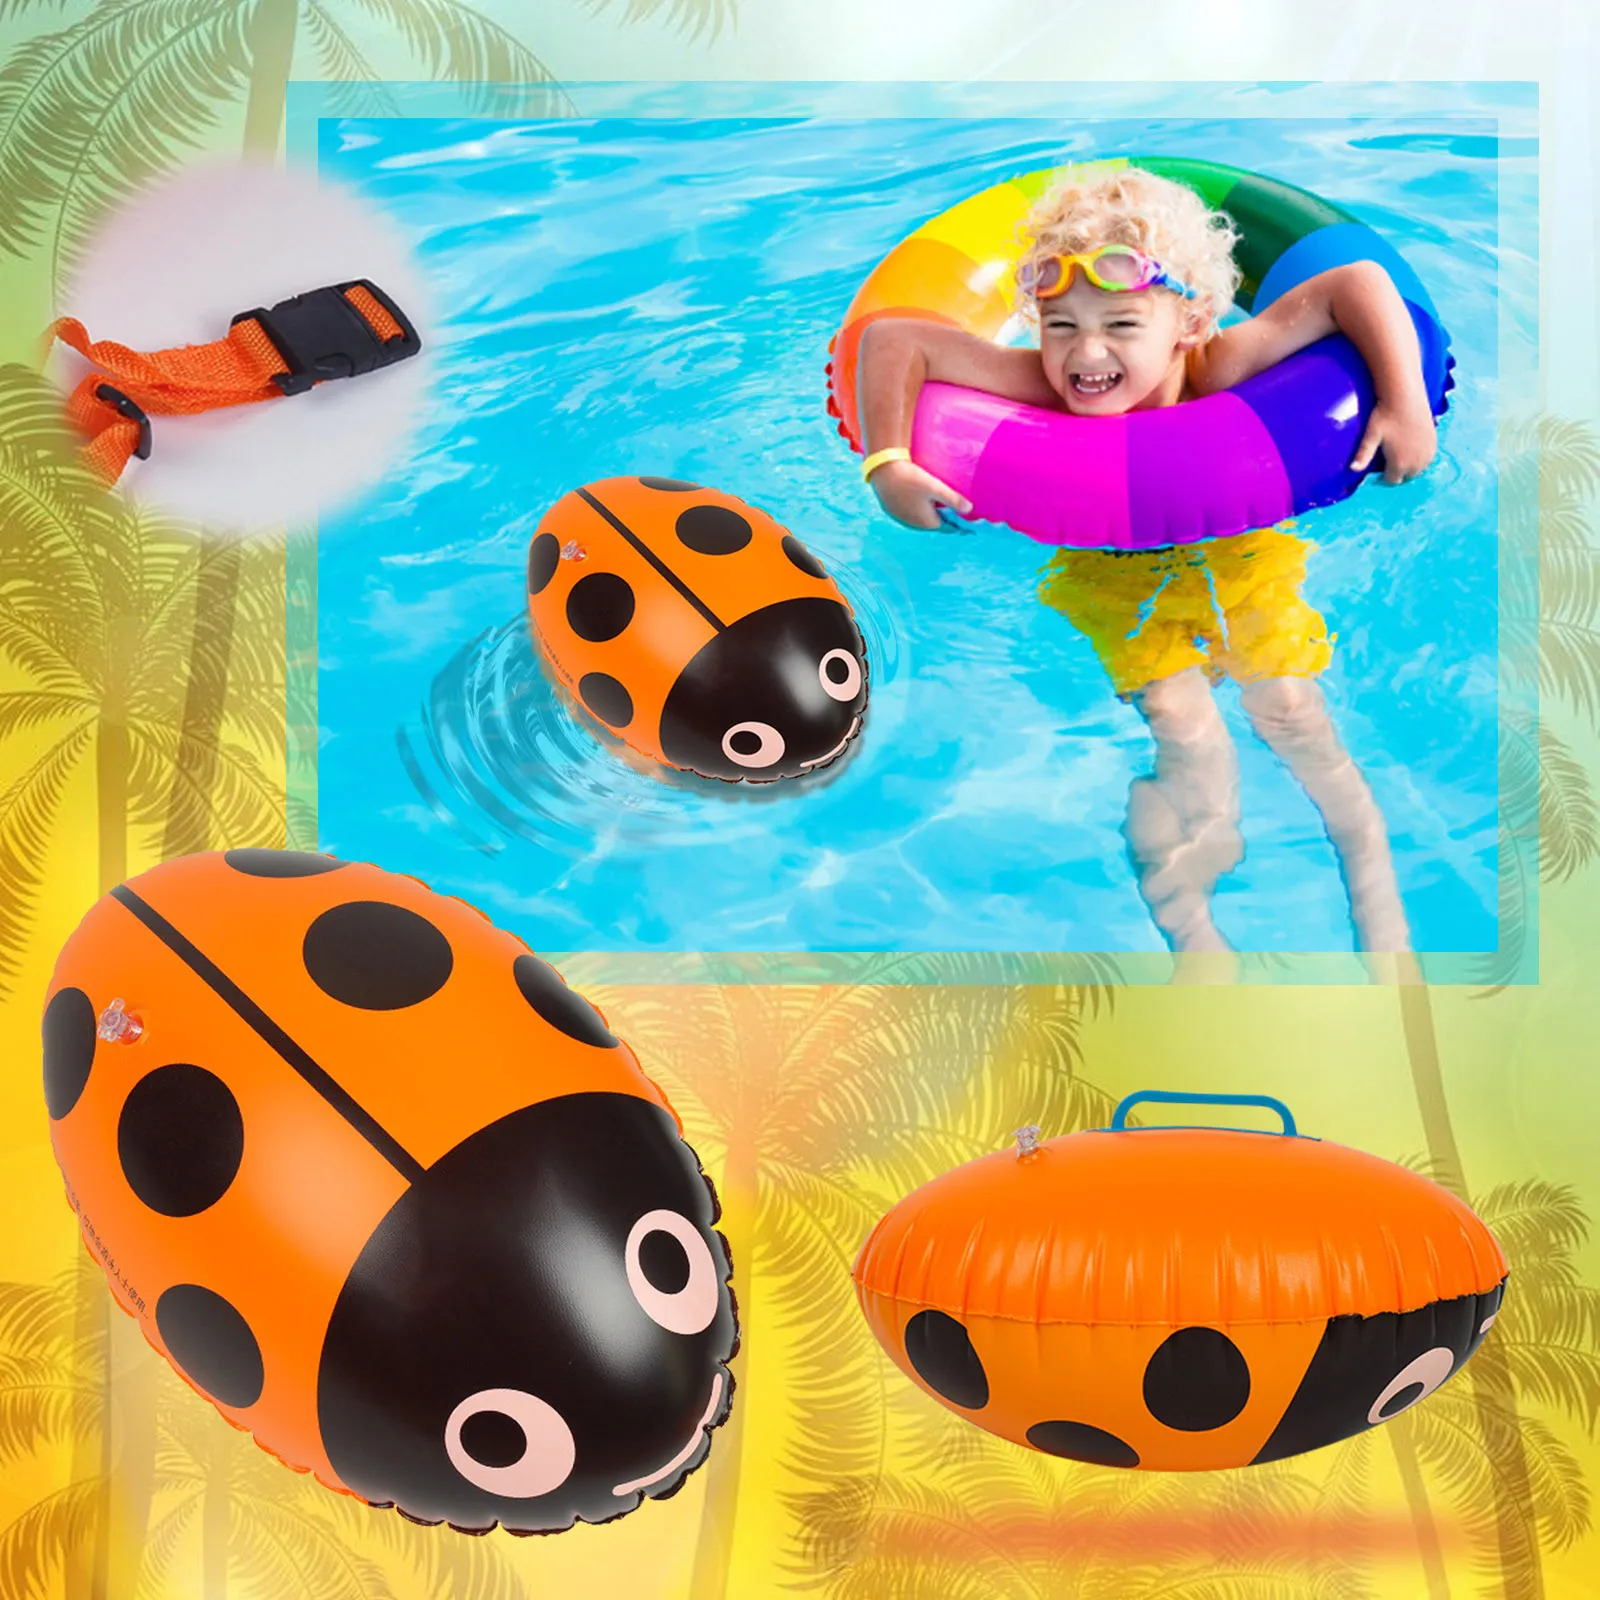 

Надувная Детская игрушка ролик регби надувной бассейн игрушка водный тематический Декор надувной бассейн пляжная игрушка на день рождения